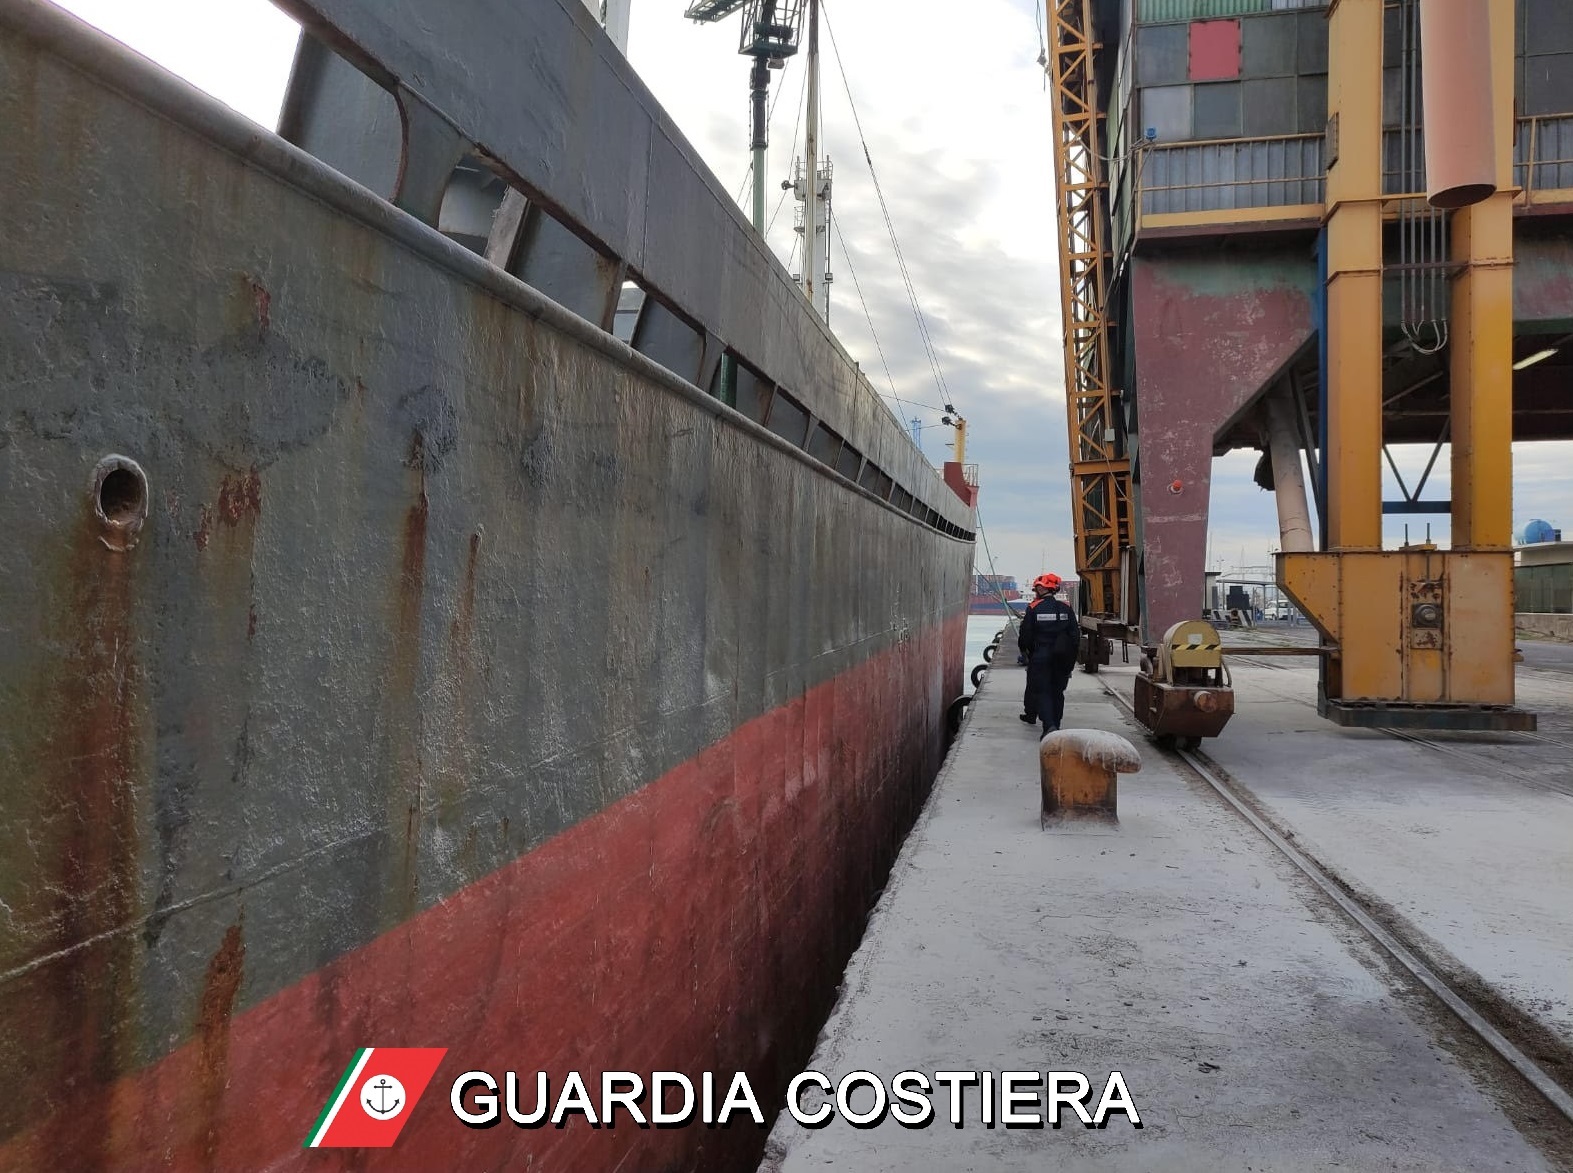 Fermo amministrativo per due navi straniere al Porto di Catania